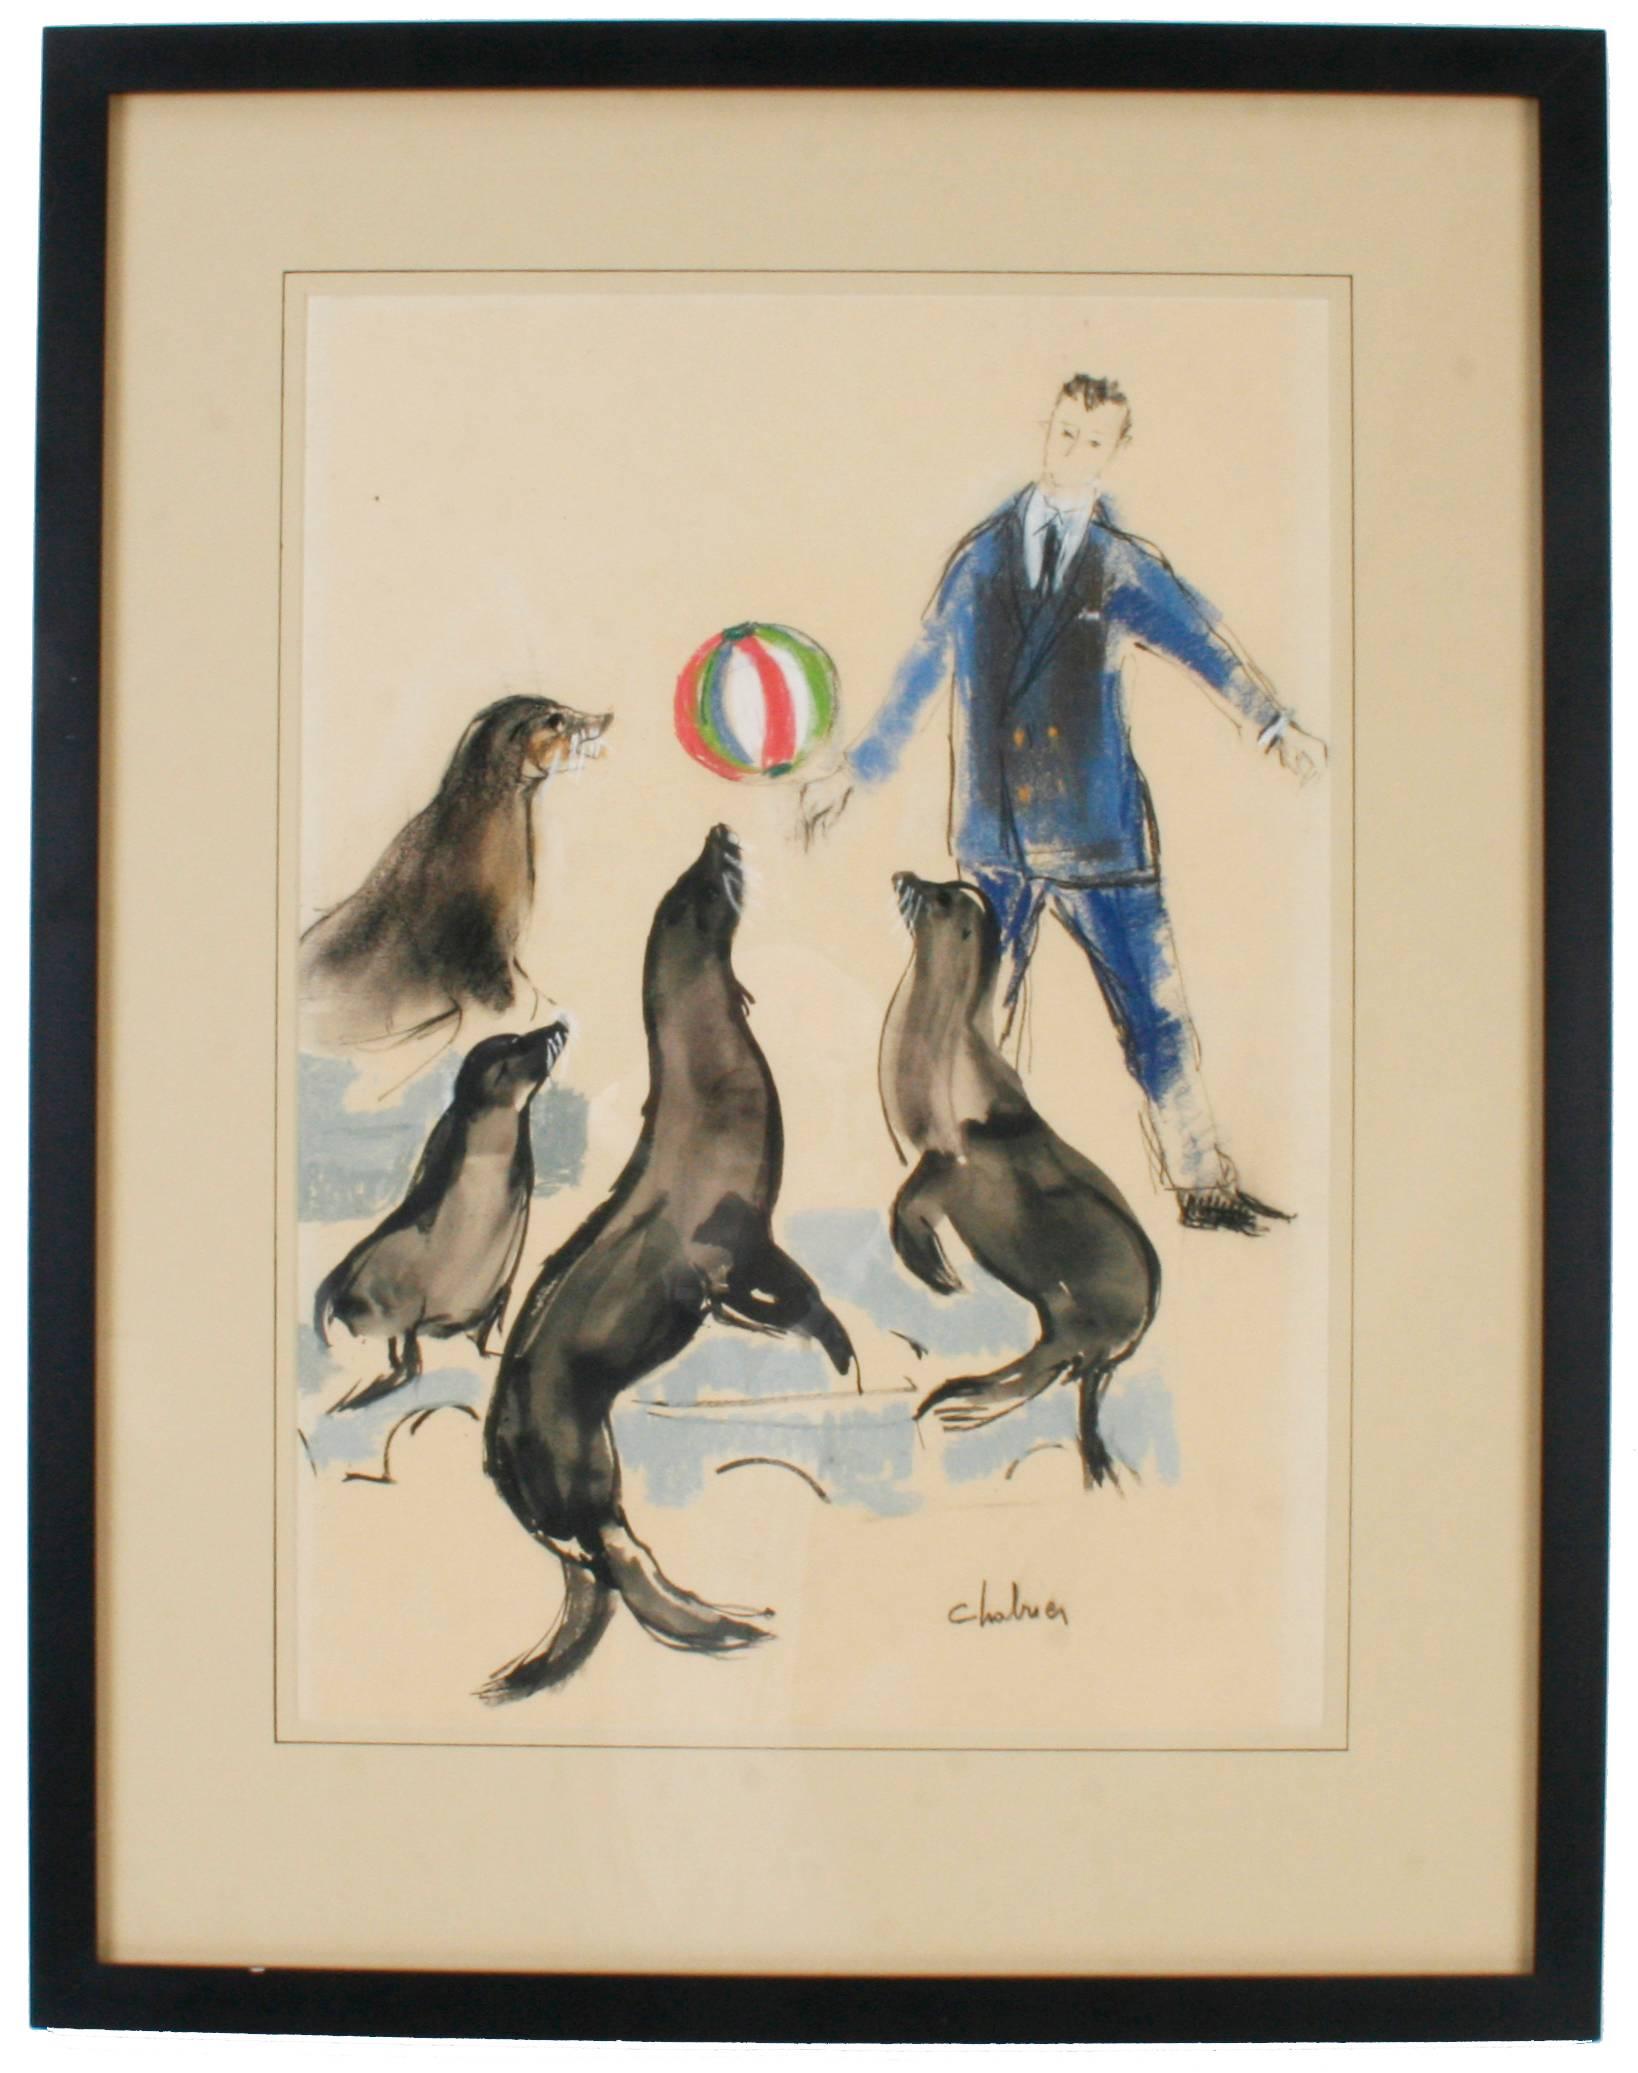 Cirque Medrano craie Illustrations d'André Legrand-Chabrier. André Legrand-Chabrier (1876-1945) était un romancier, journaliste, illustrateur et chroniqueur du cirque français. L'une des illustrations représente un dresseur de chiens avec un caniche